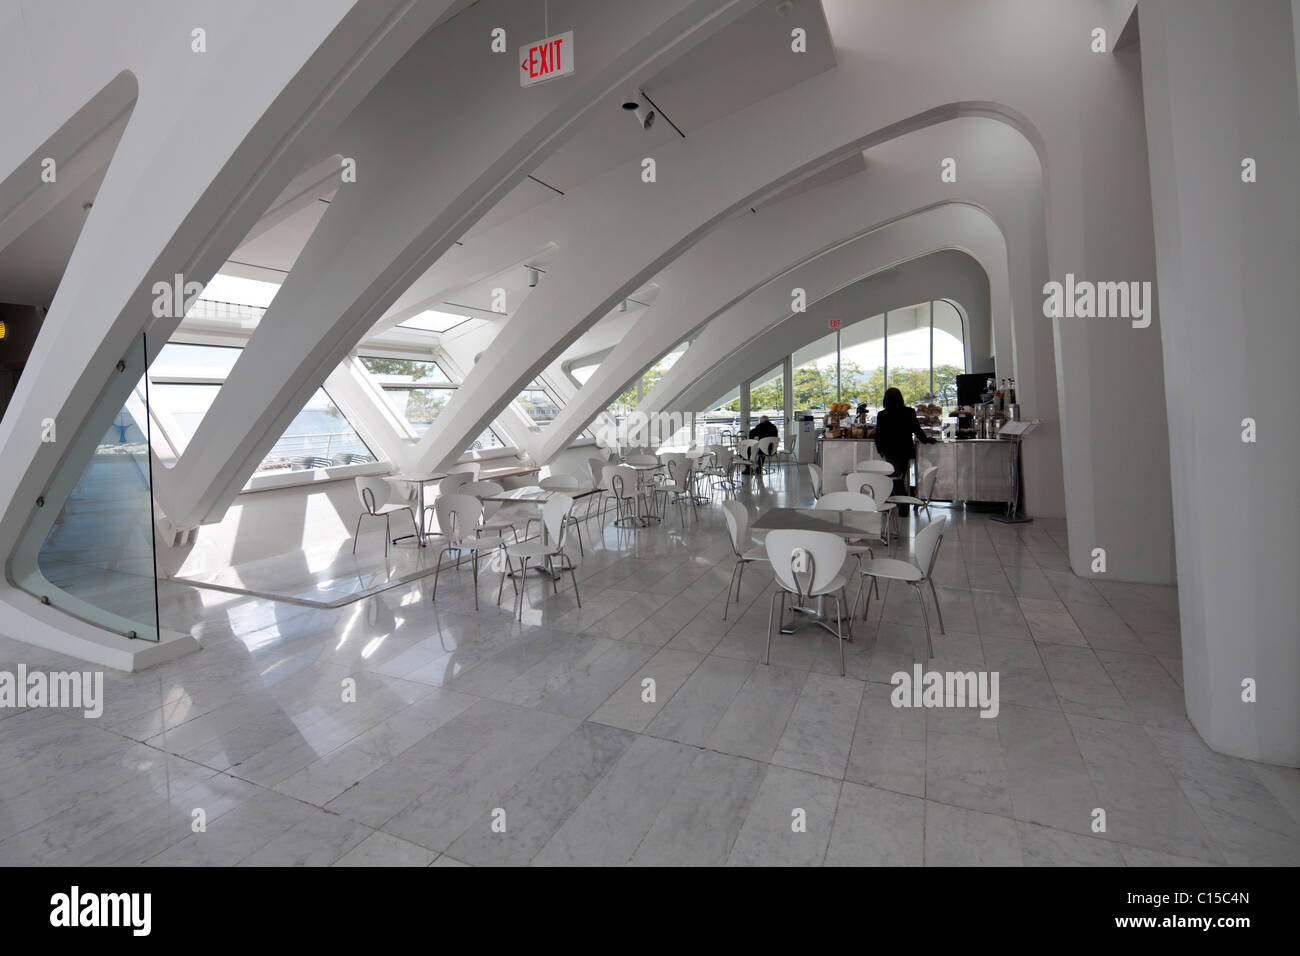 cafe, Quadracci Pavilion, designed by Santiago Calatrava, Milwaukee Art Museum, Wisconsin, USA Stock Photo